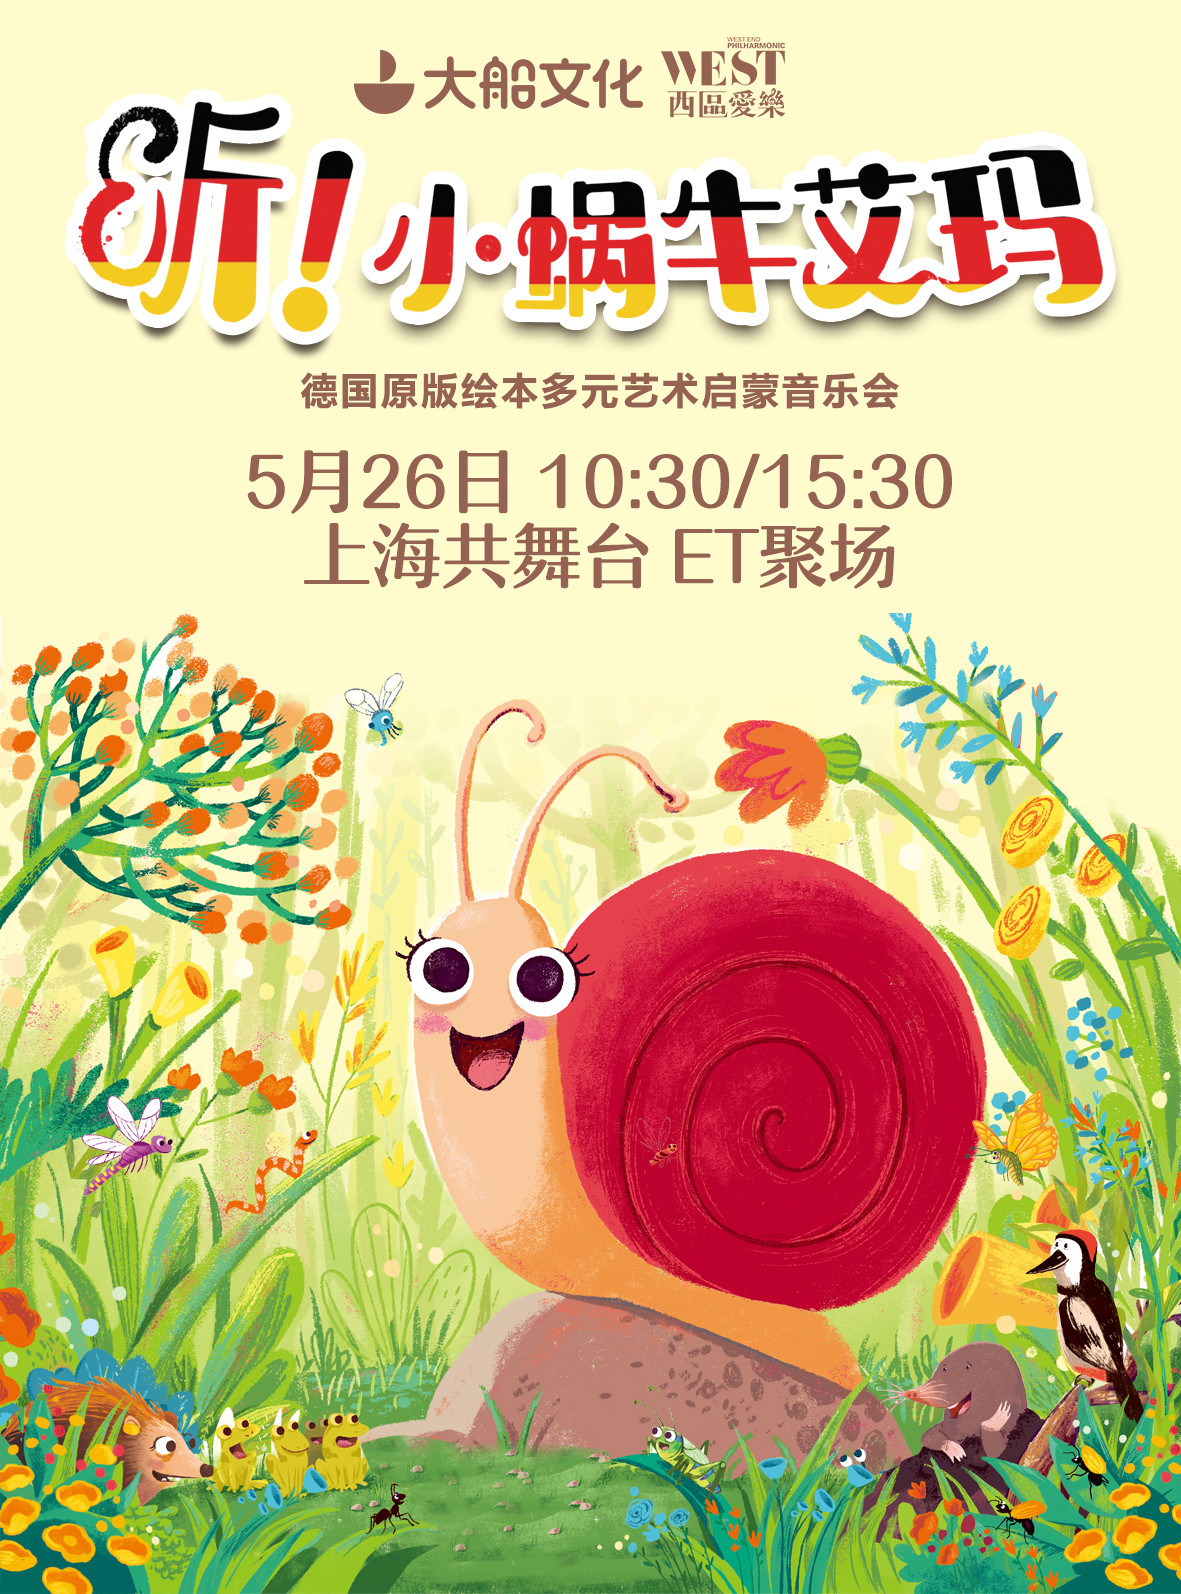 德国原版绘本多元艺术启蒙音乐会《听！小蜗牛艾玛》-上海站